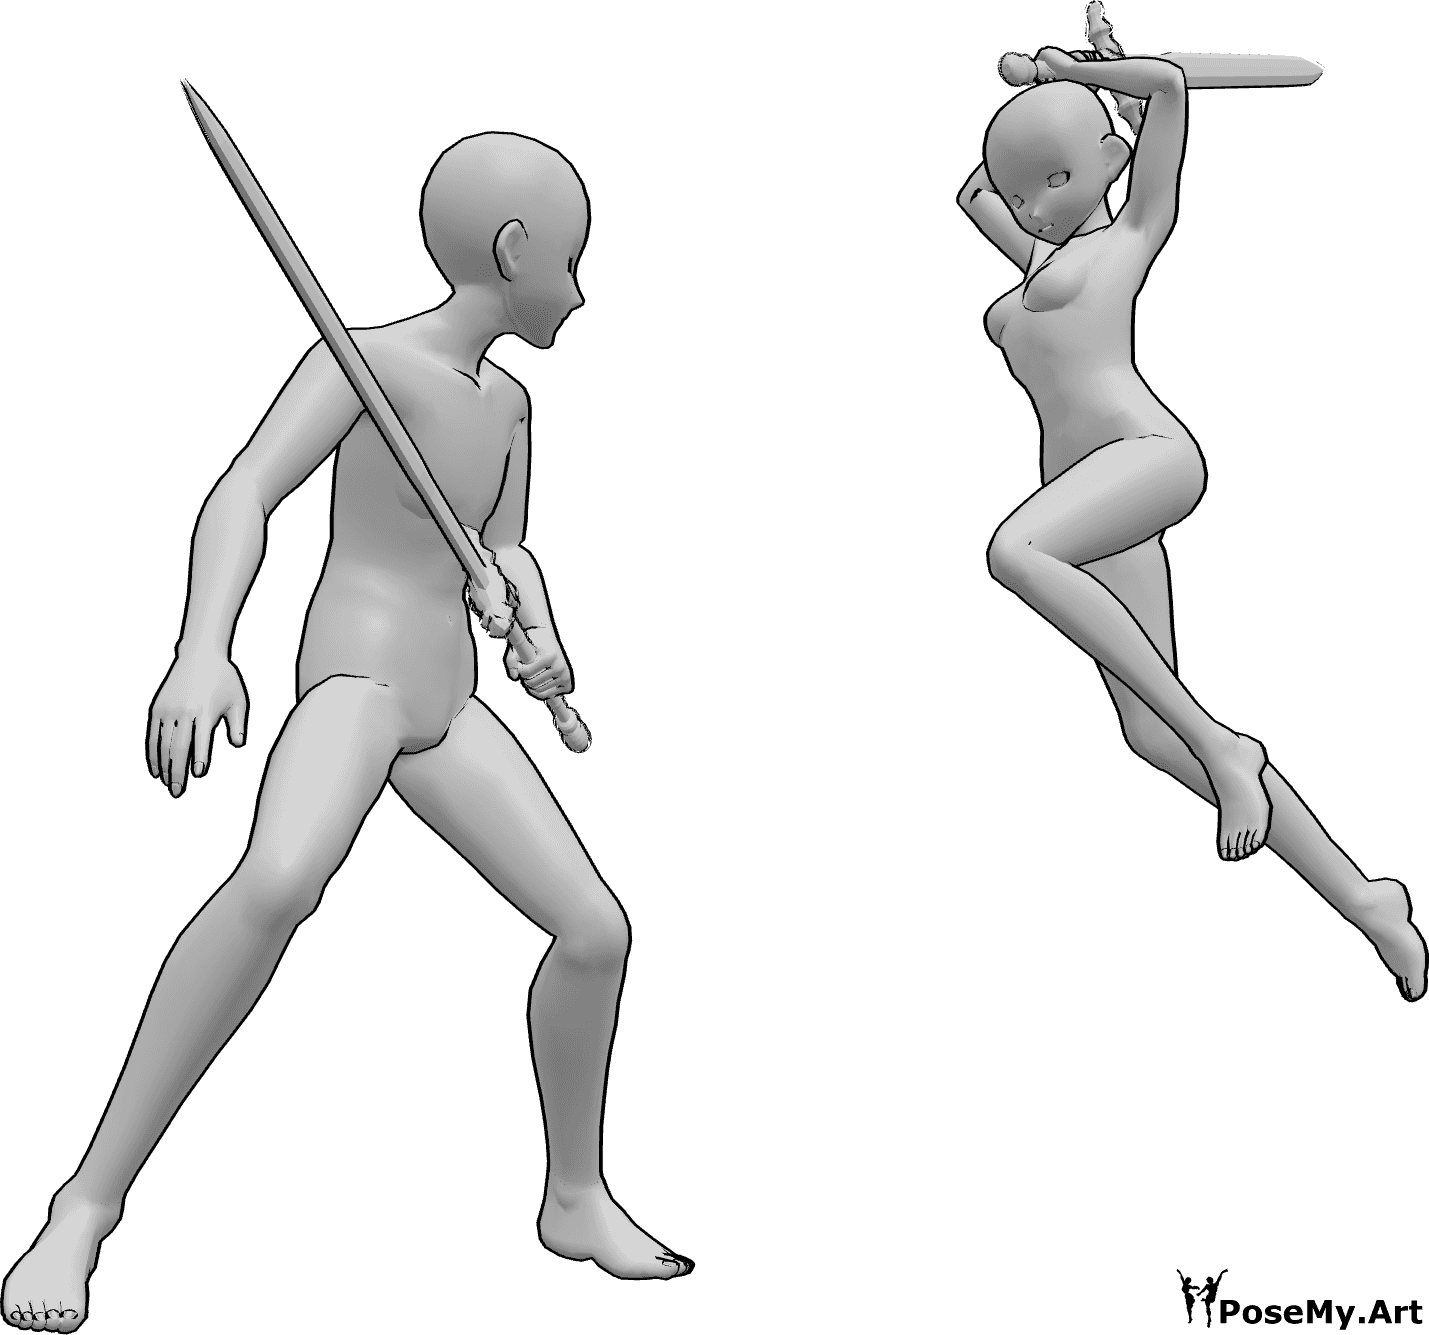 Posen-Referenz- Anime-Schwertkampf-Pose - Anime weiblich und männlich kämpfen mit Schwertern, weiblich ist über zu schlagen mit ihrem Schwert